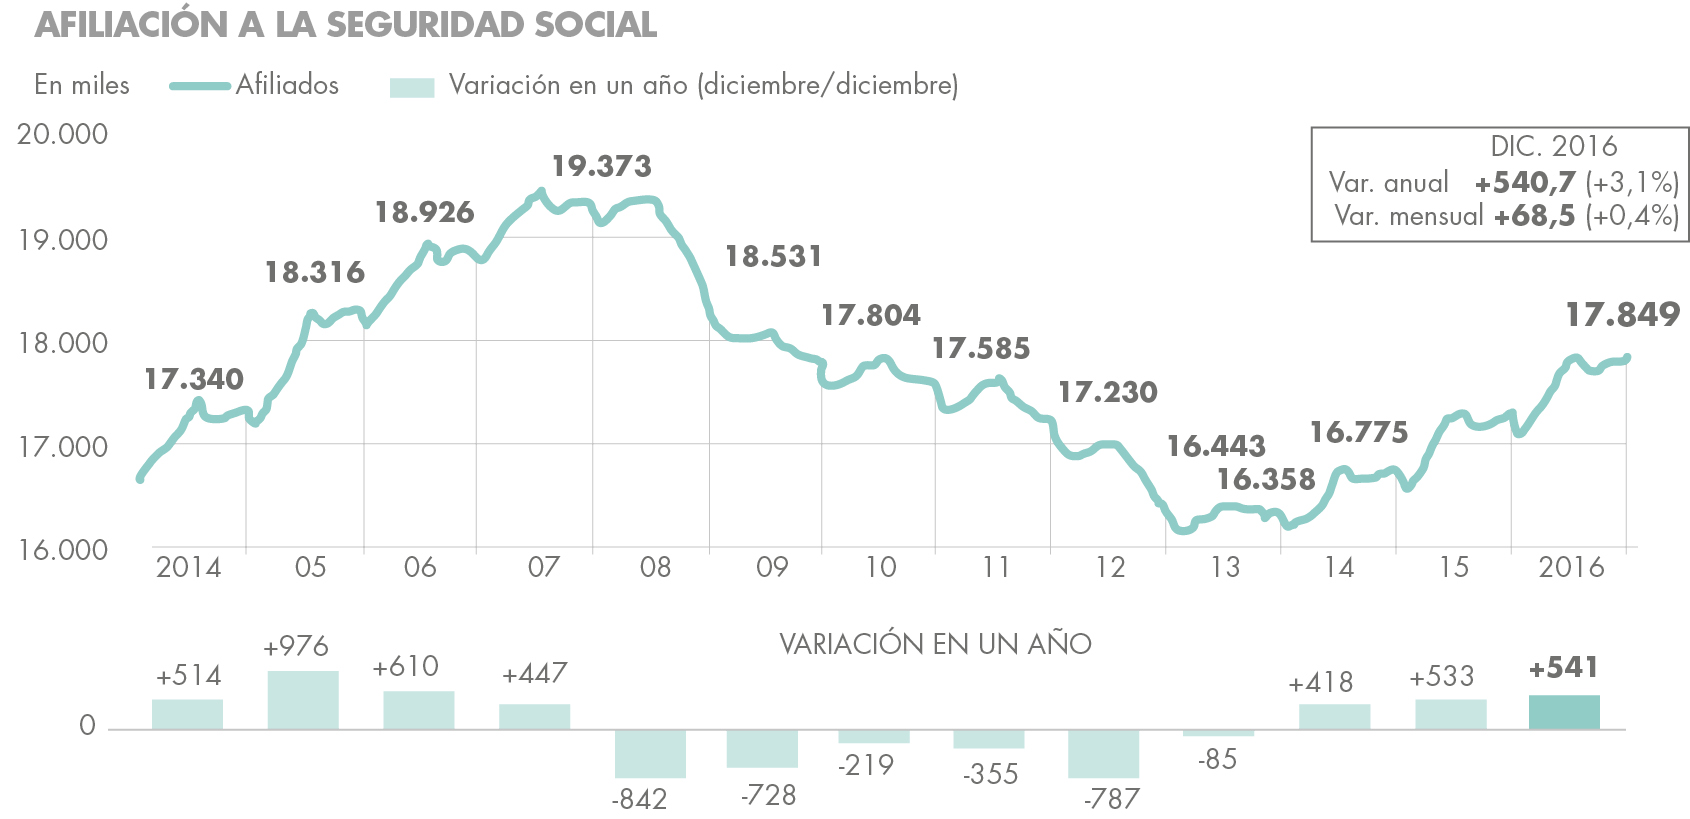 Desempleo en 2016 en España afiliacion seguridad social Housers